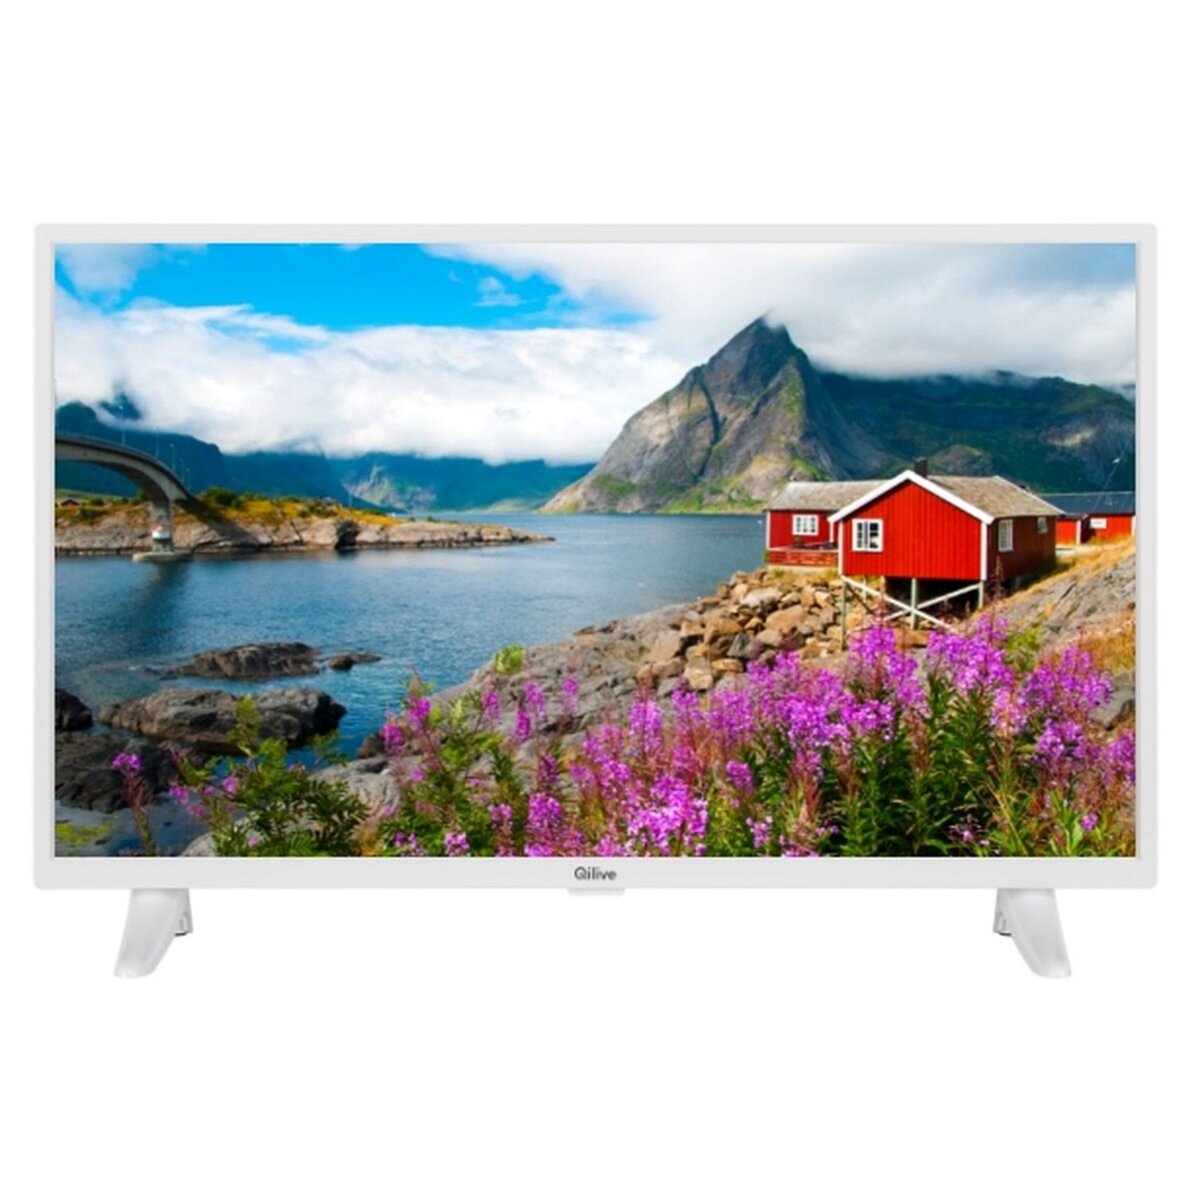 QILIVE Q32HS211W TV LED HD 80 cm Smart TV